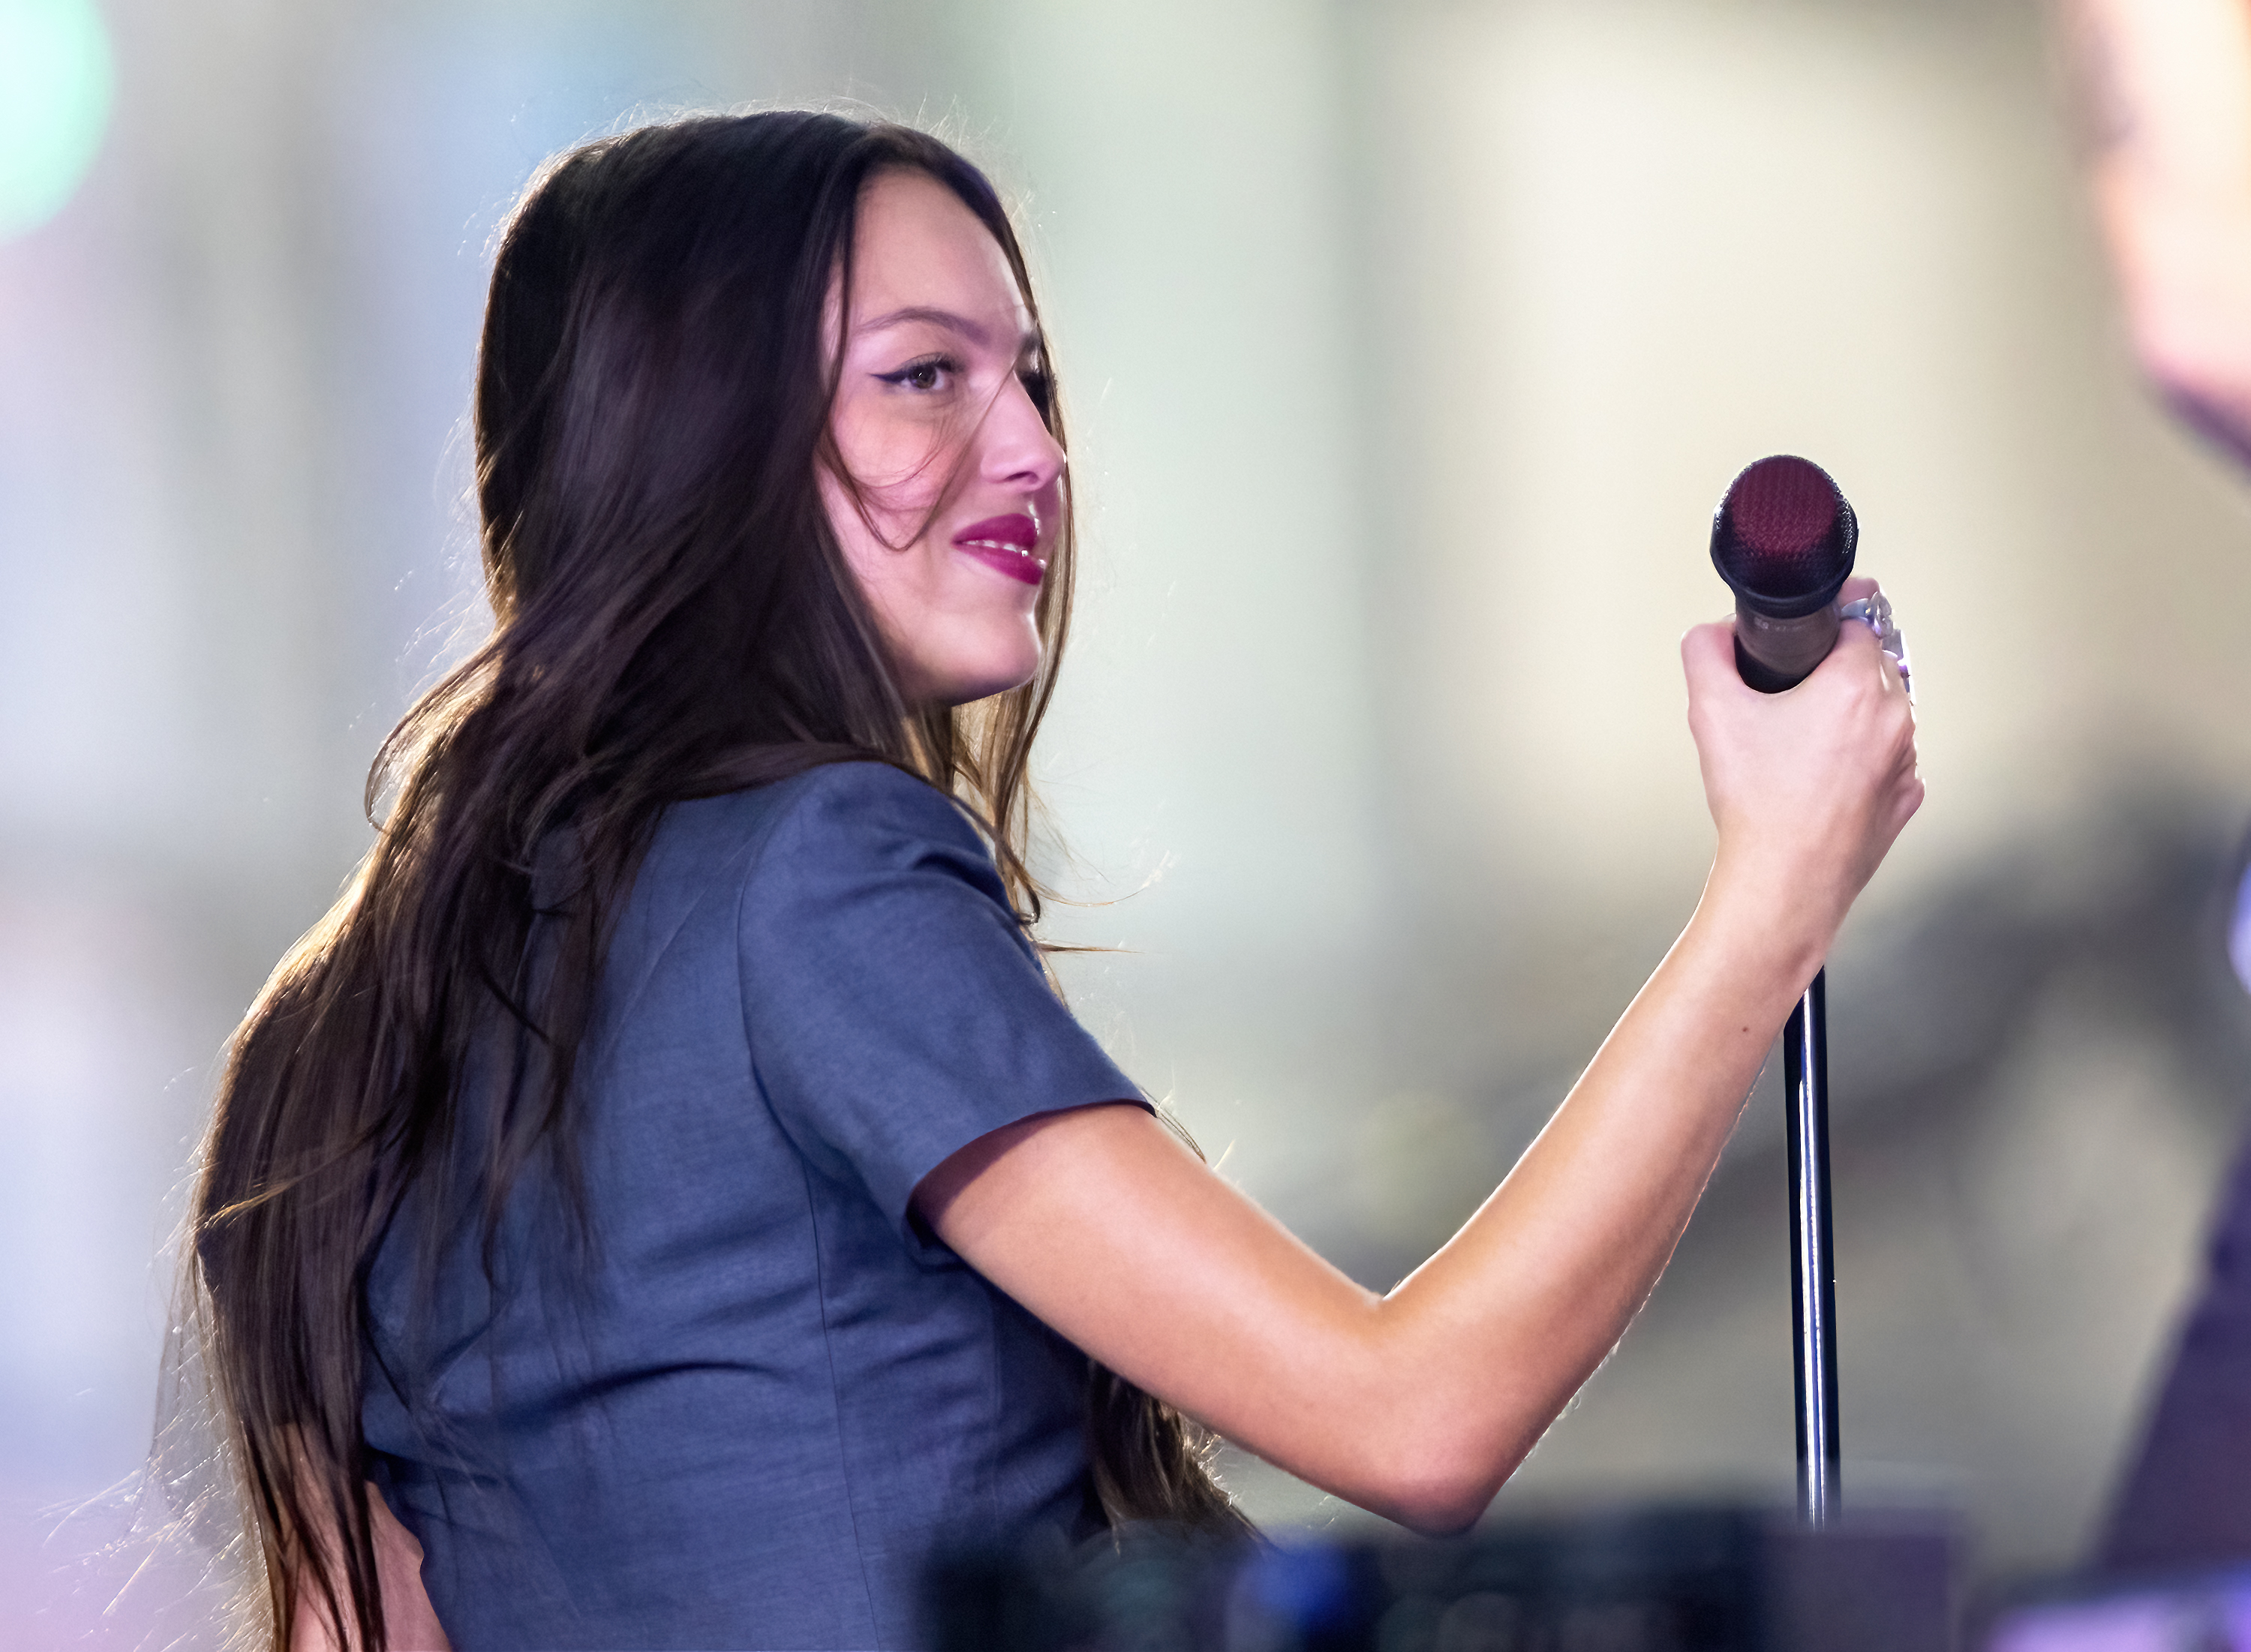 olivia singing on stage